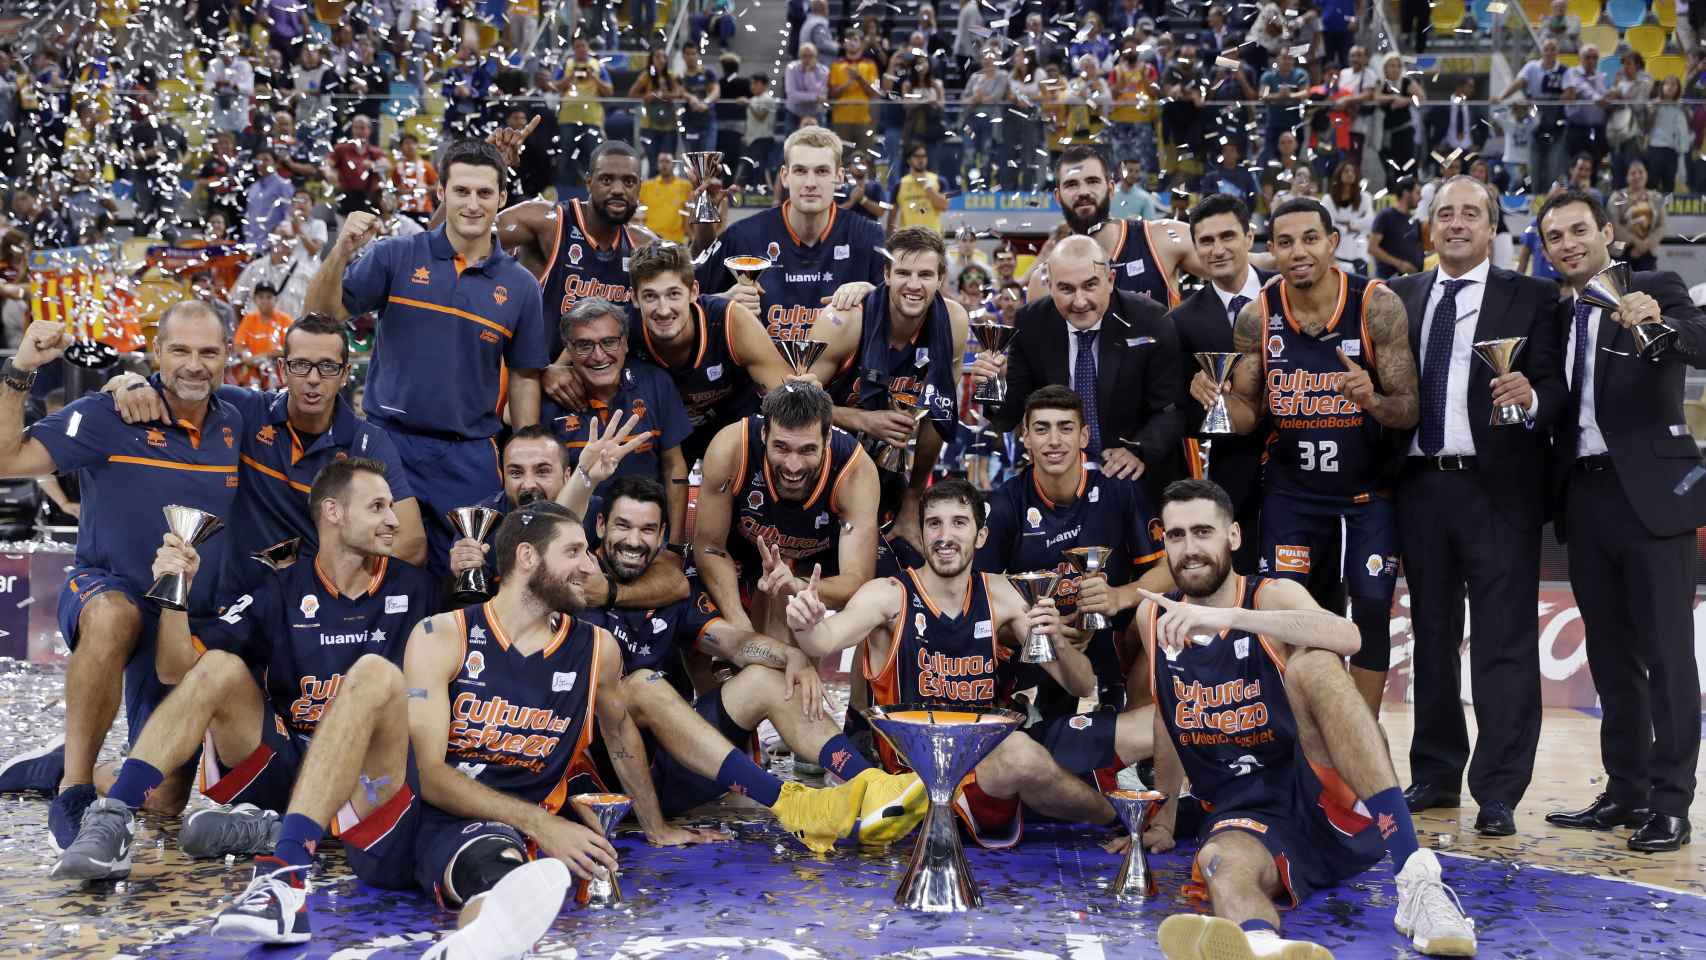 El Valencia Basket campeón de la Supercopa Endesa 2017.